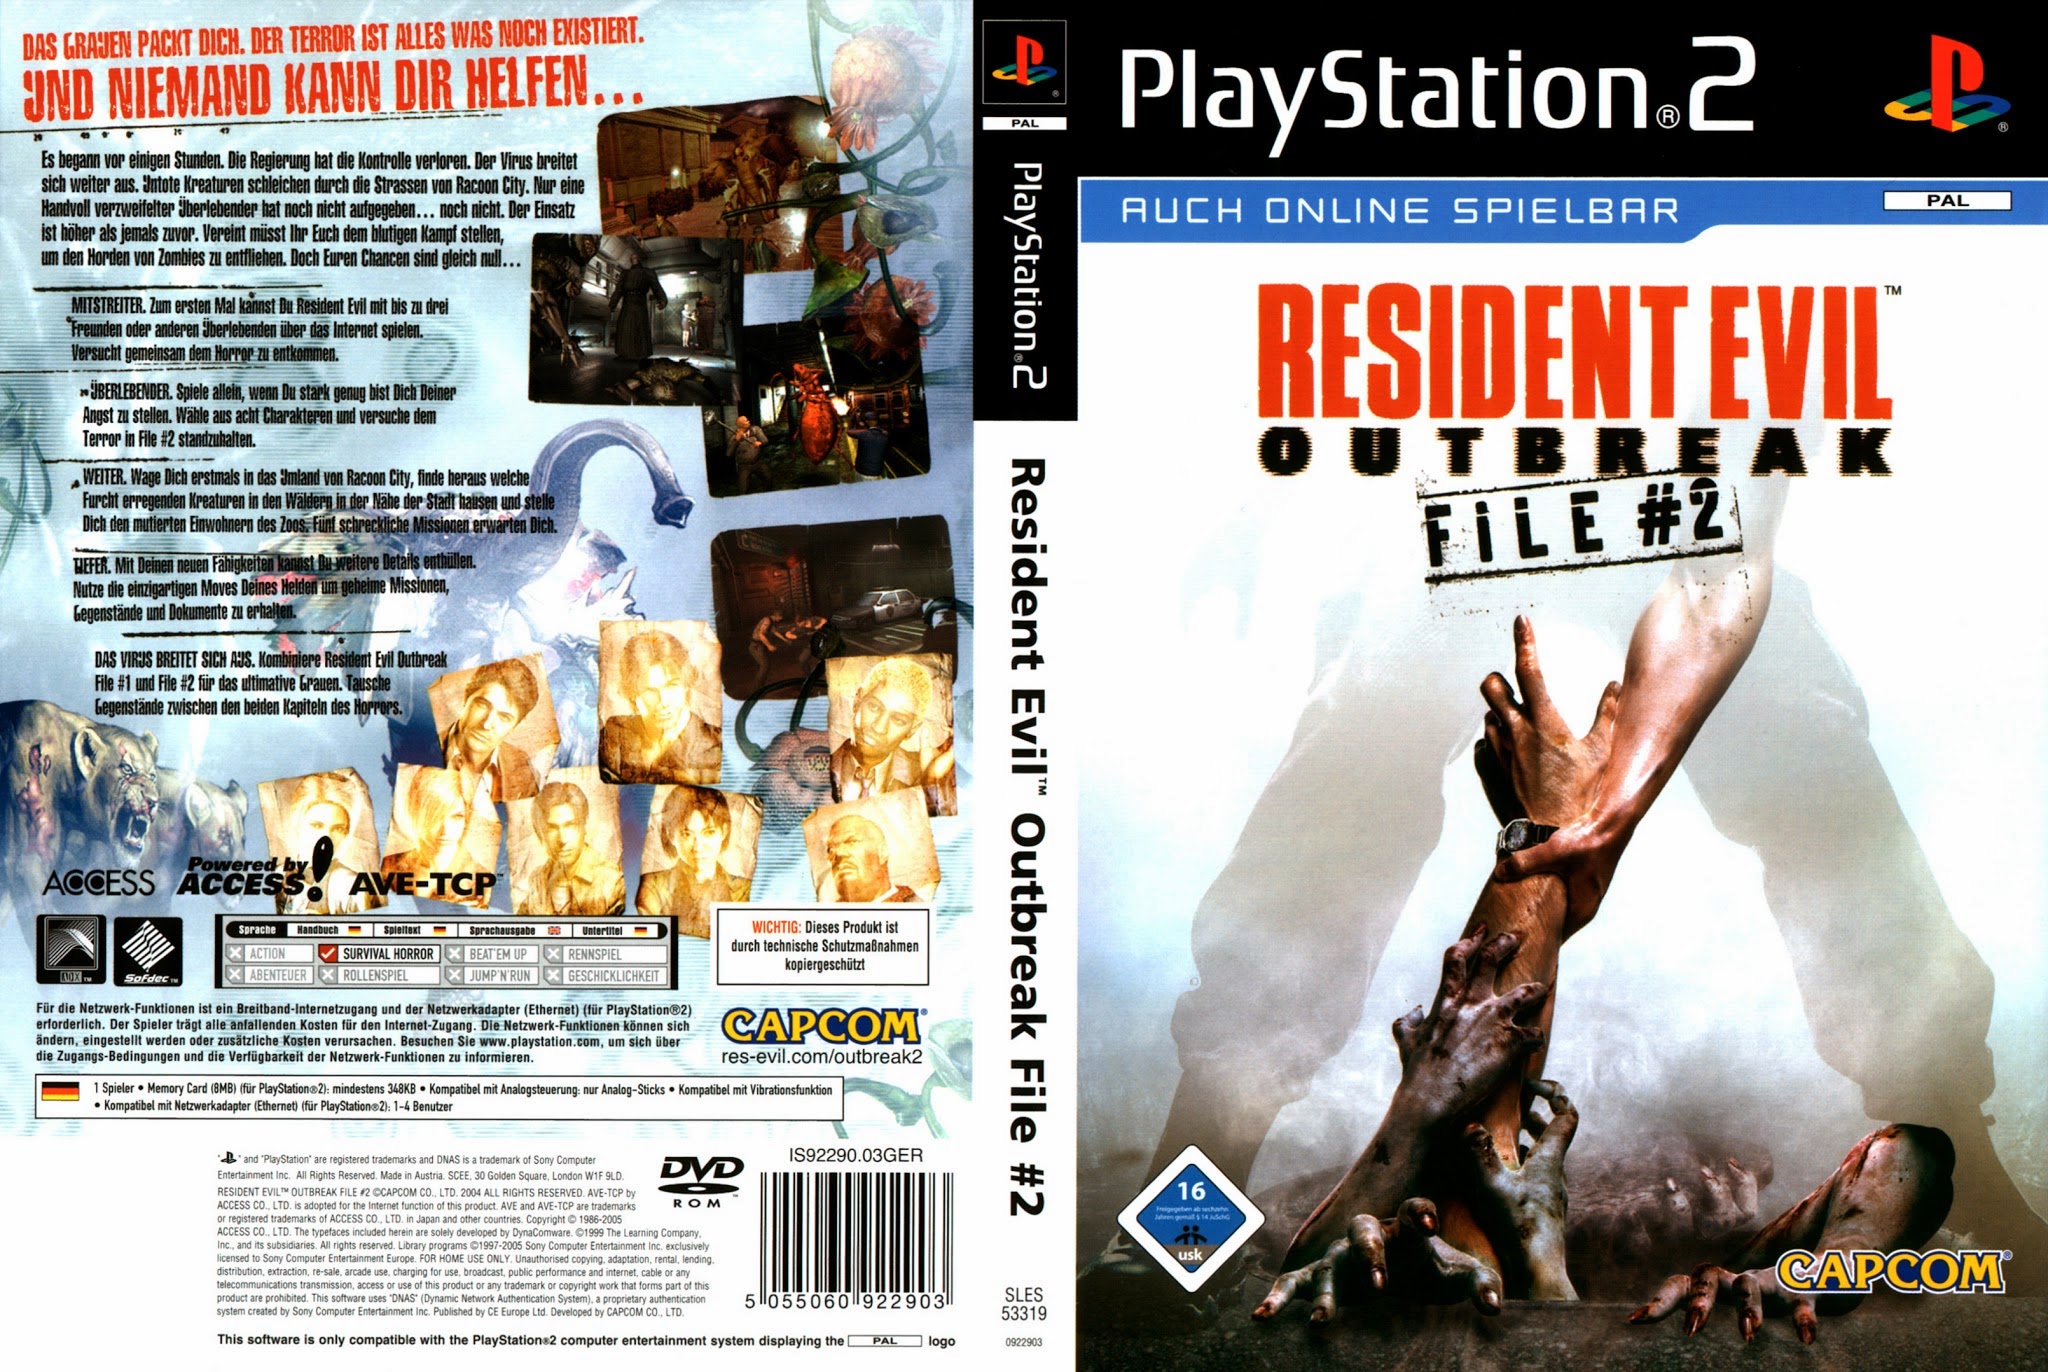 Resident Evil Outbreak: File #2 #12